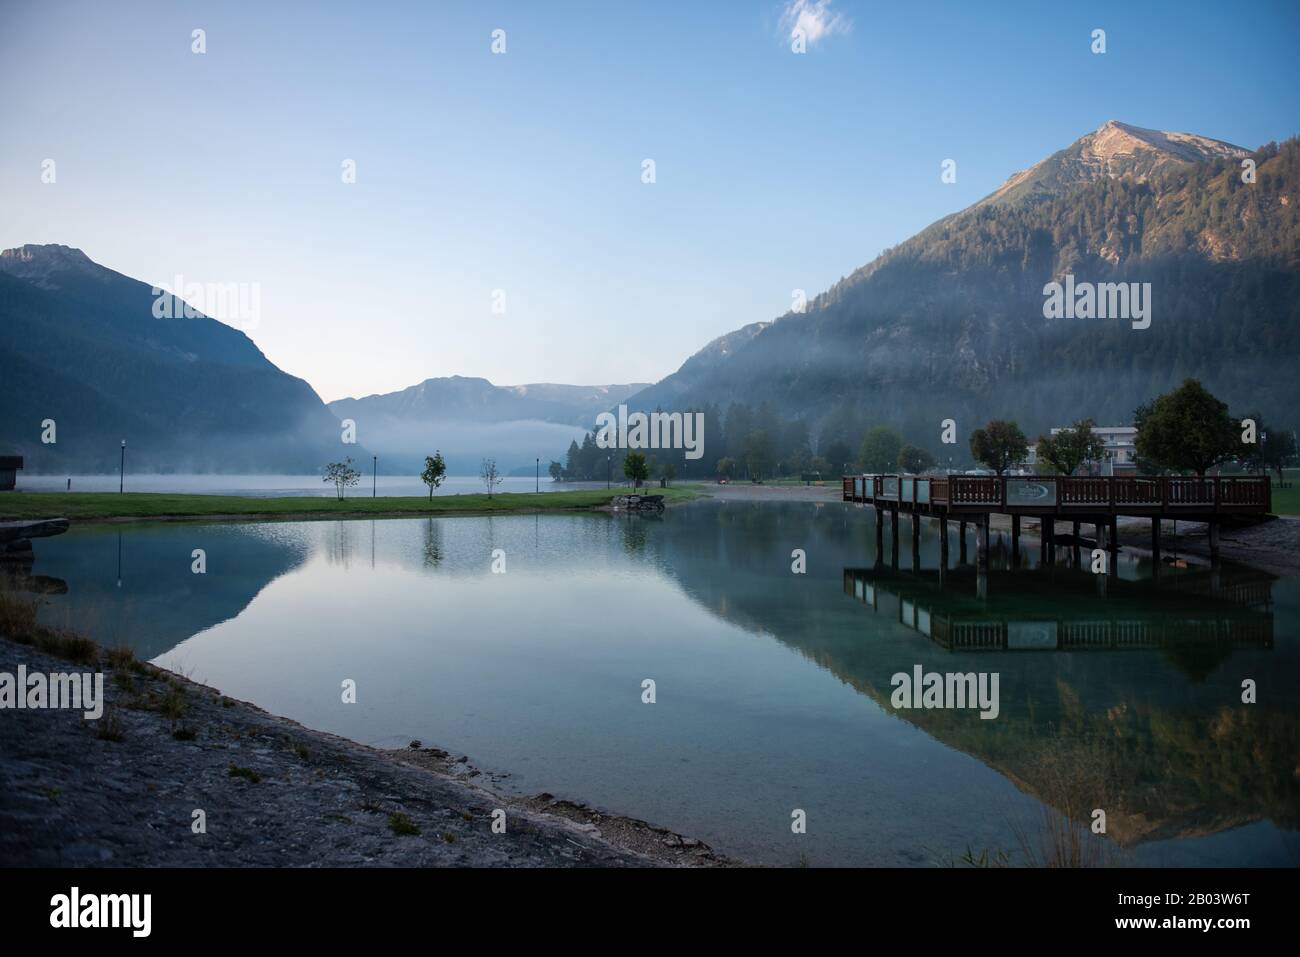 Lake Achensee in Tyrol / Austria Stock Photo